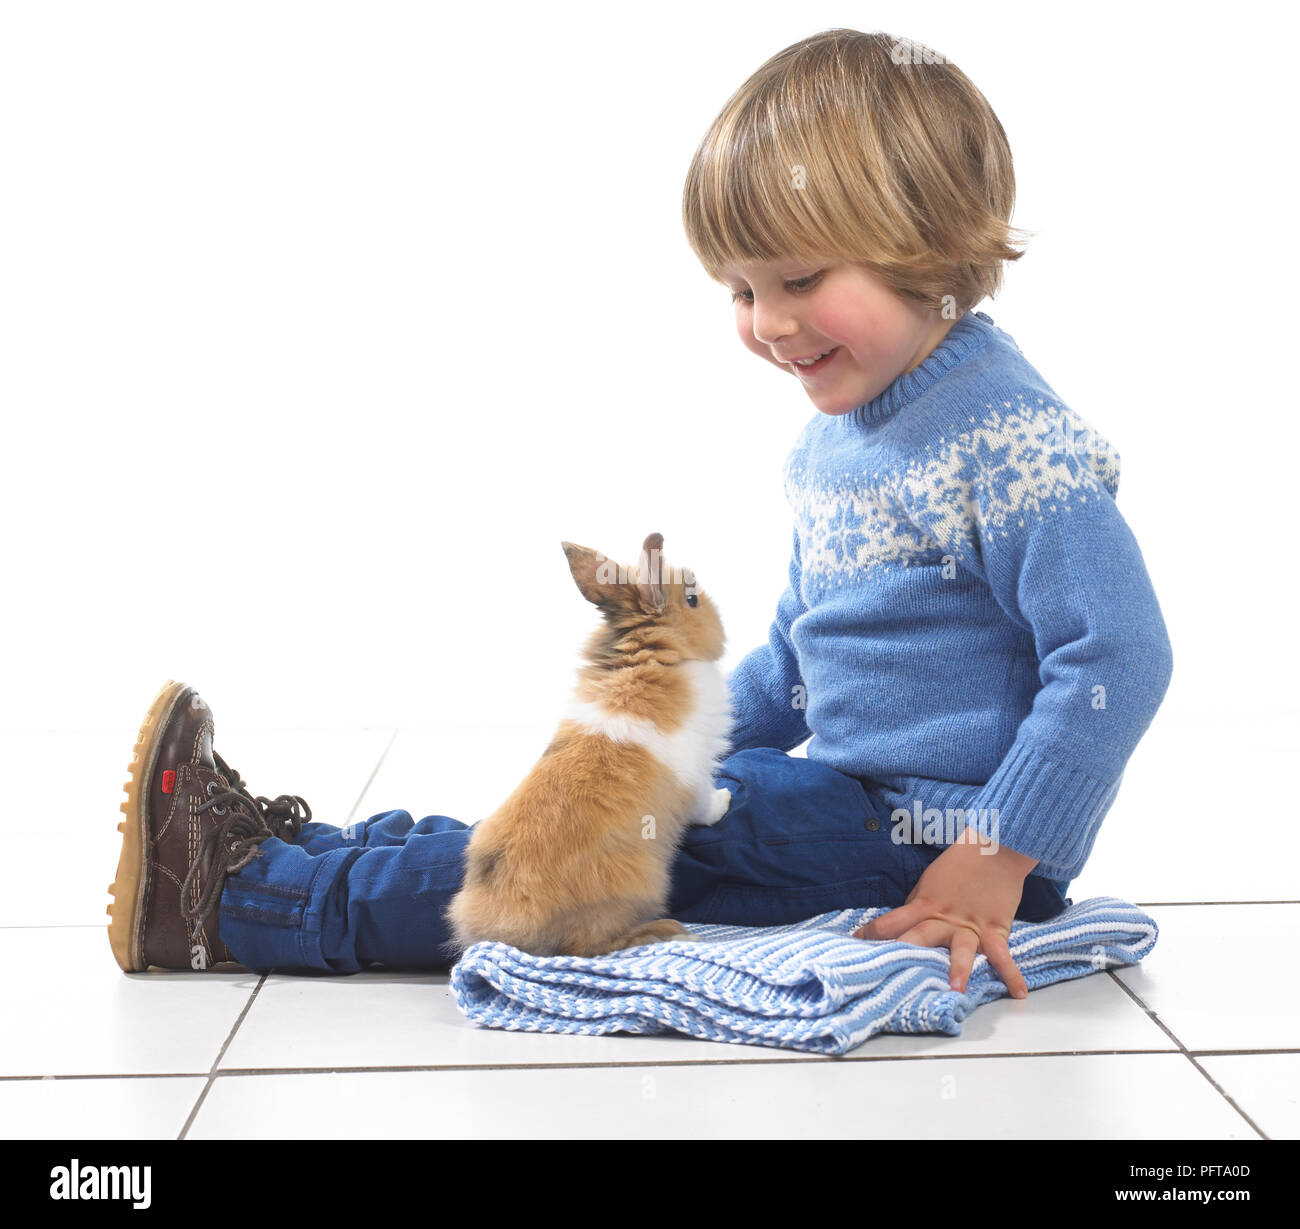 Muchacho sentado con conejo en Manta, 3 años Foto de stock